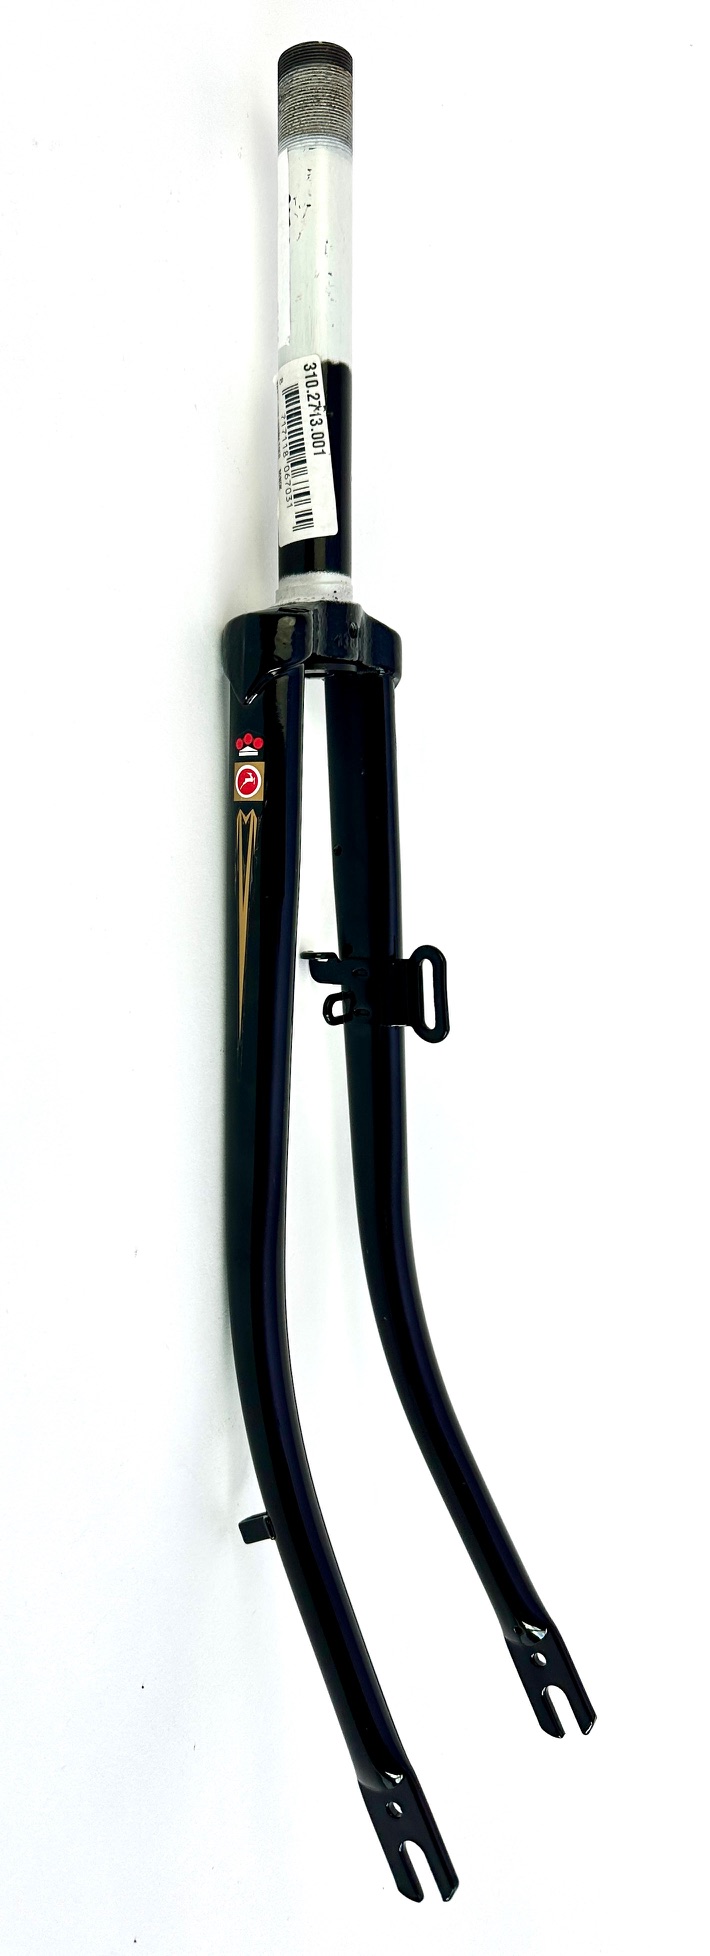 Horquilla de bicicleta Gazelle 28 pulgadas de longitud de eje 180, negro